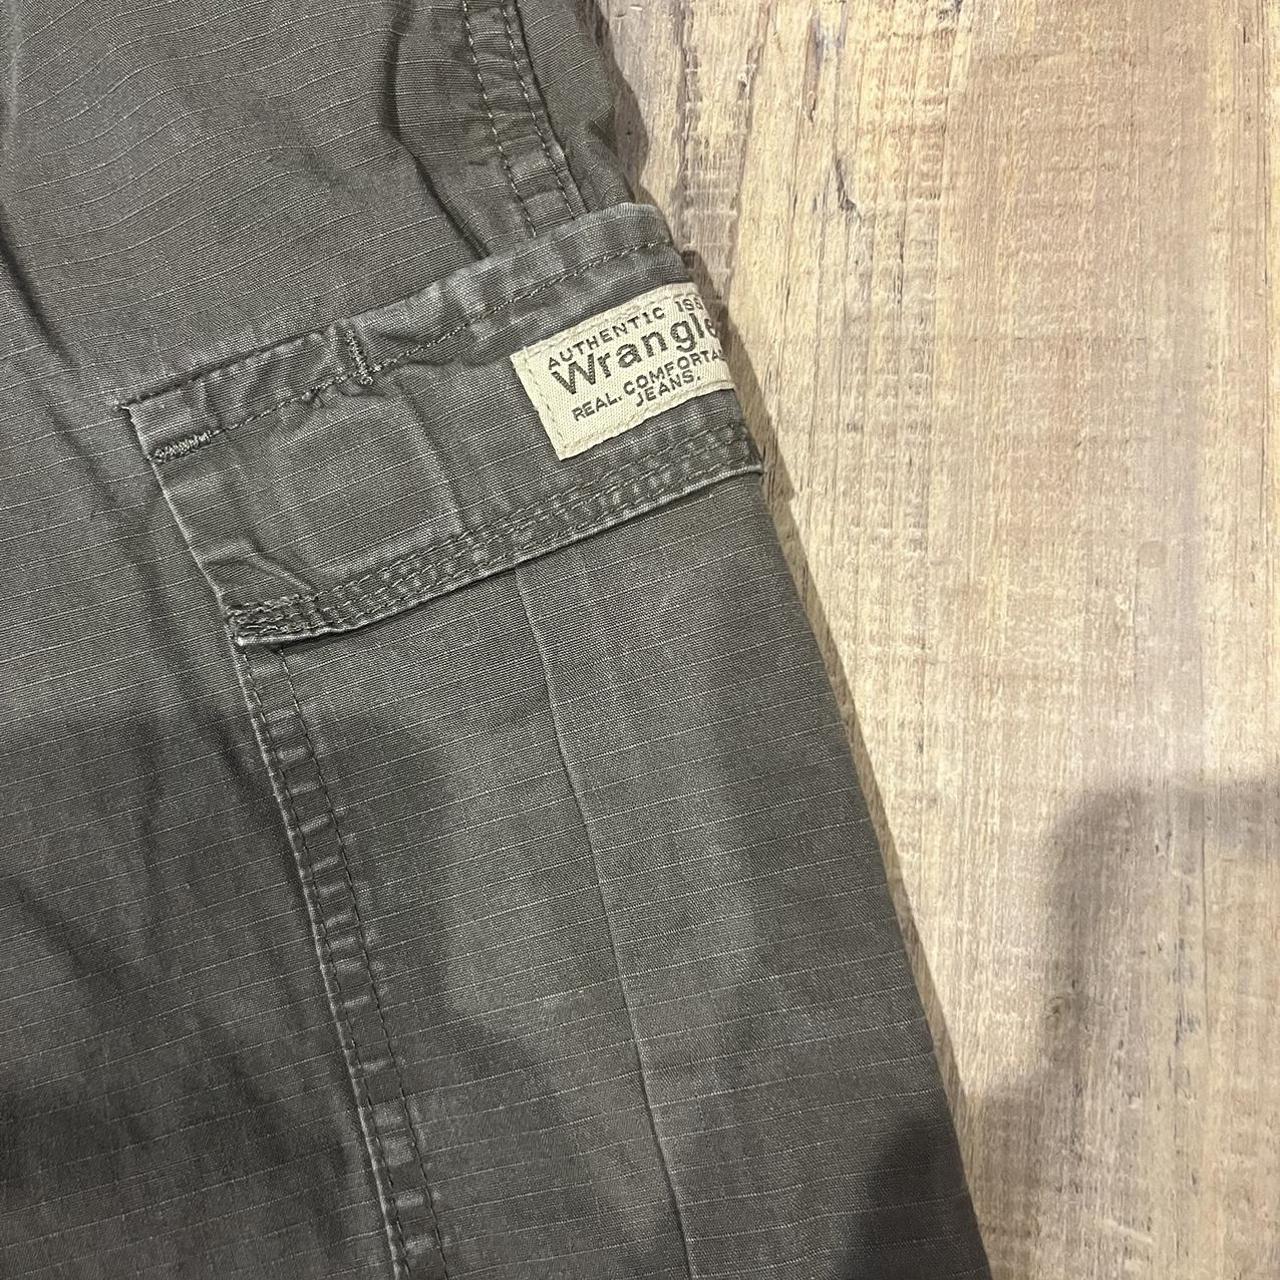 Men’s Vintage Wrangler olive cargo pants Size 34 x... - Depop